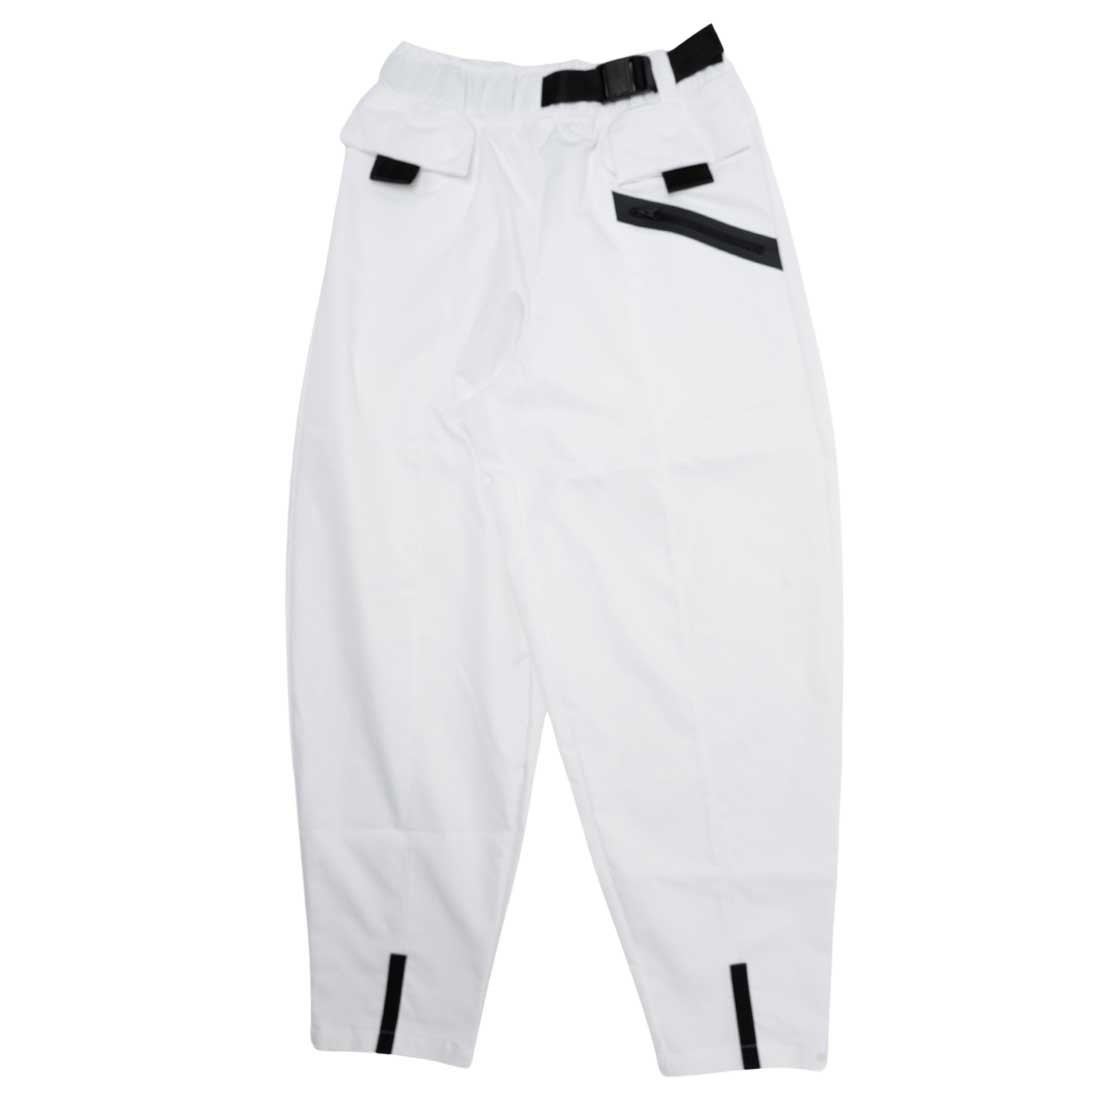 regelmatig aanpassen knal nike women sportswear tech pack woven pants white black